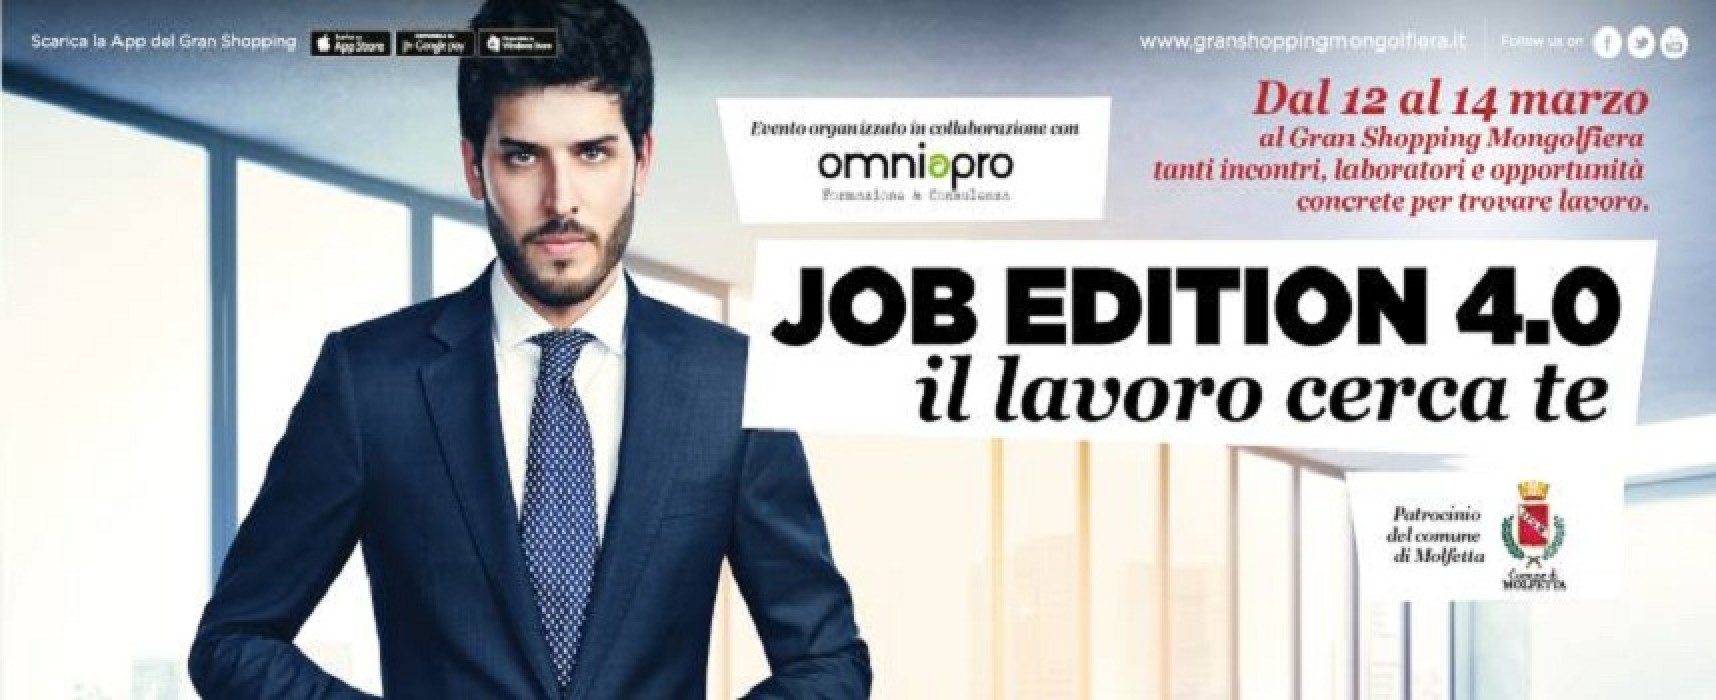 “Job Edition 4.0-Il lavoro cerca te”, presso “La Mongolfiera” di Molfetta l’evento per chi cerca lavoro